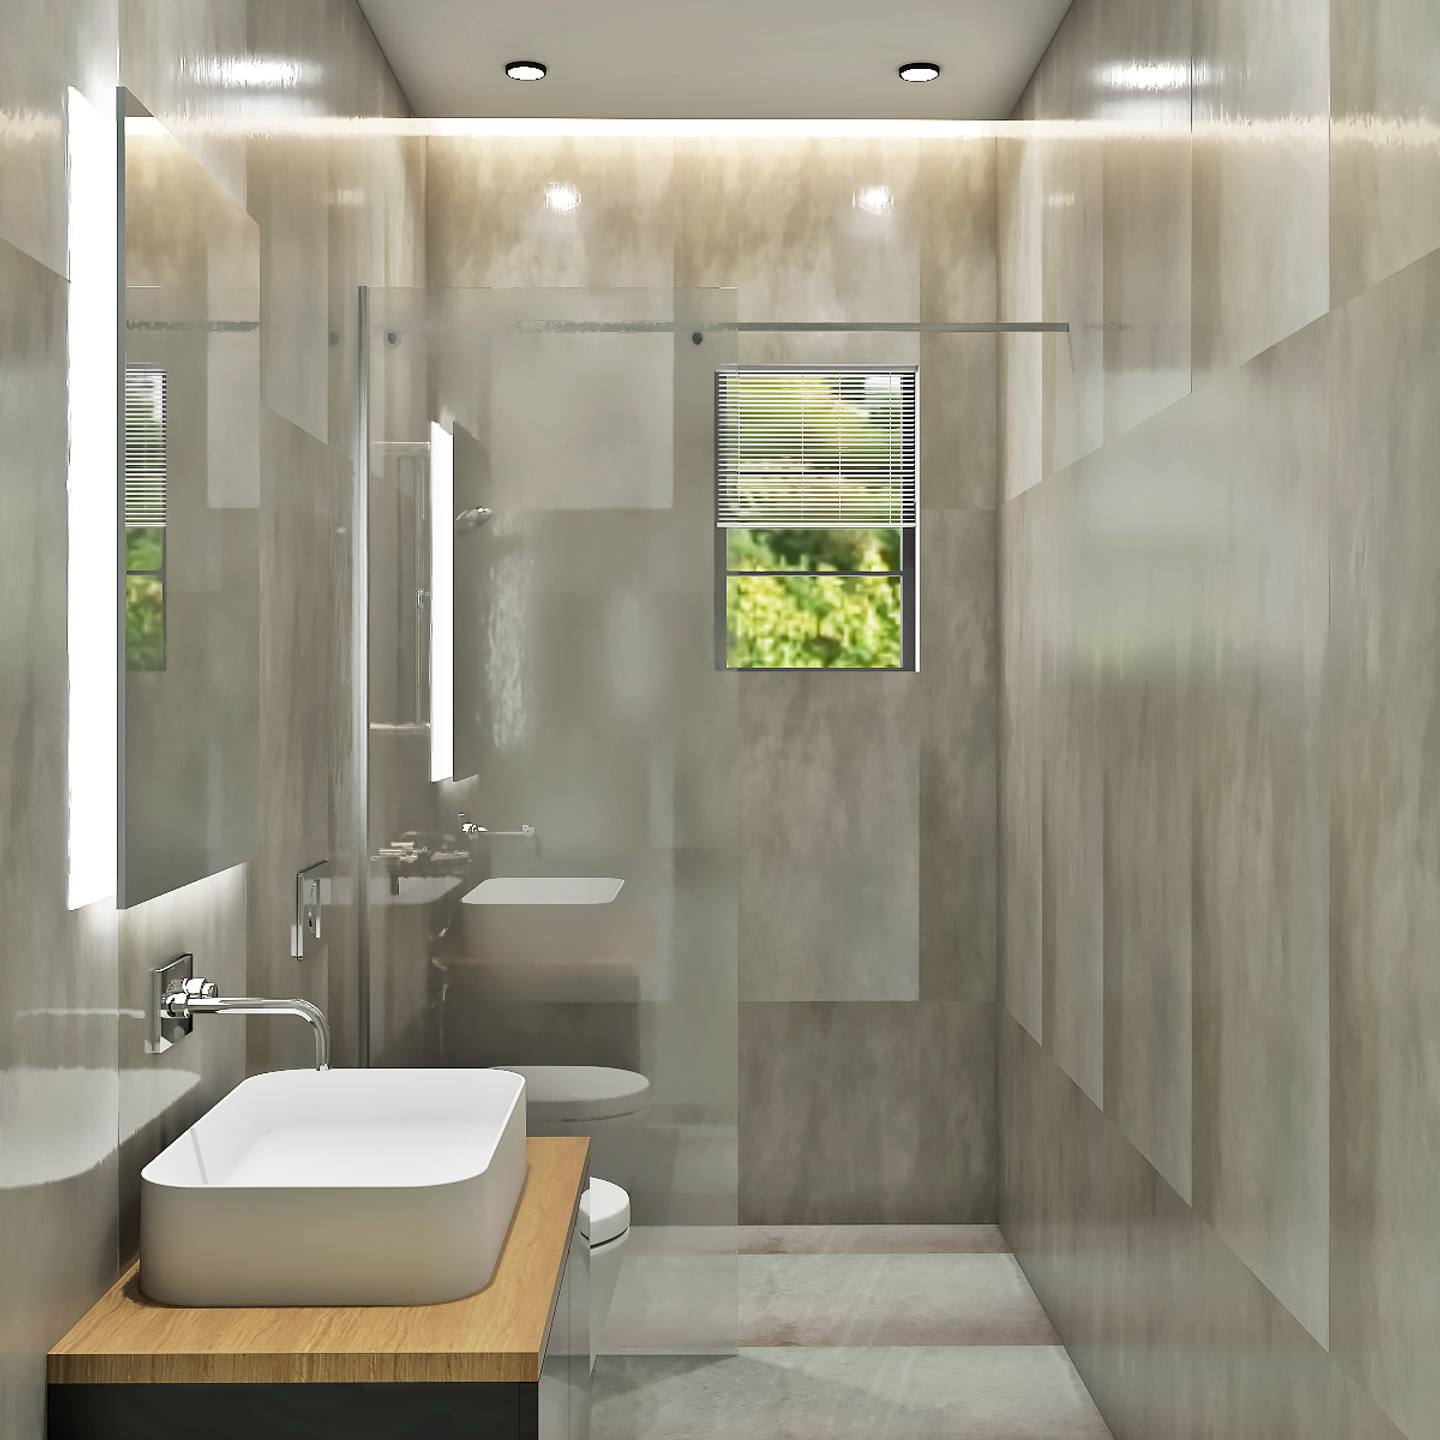 Spacious Classy Bathroom Design - Livspace